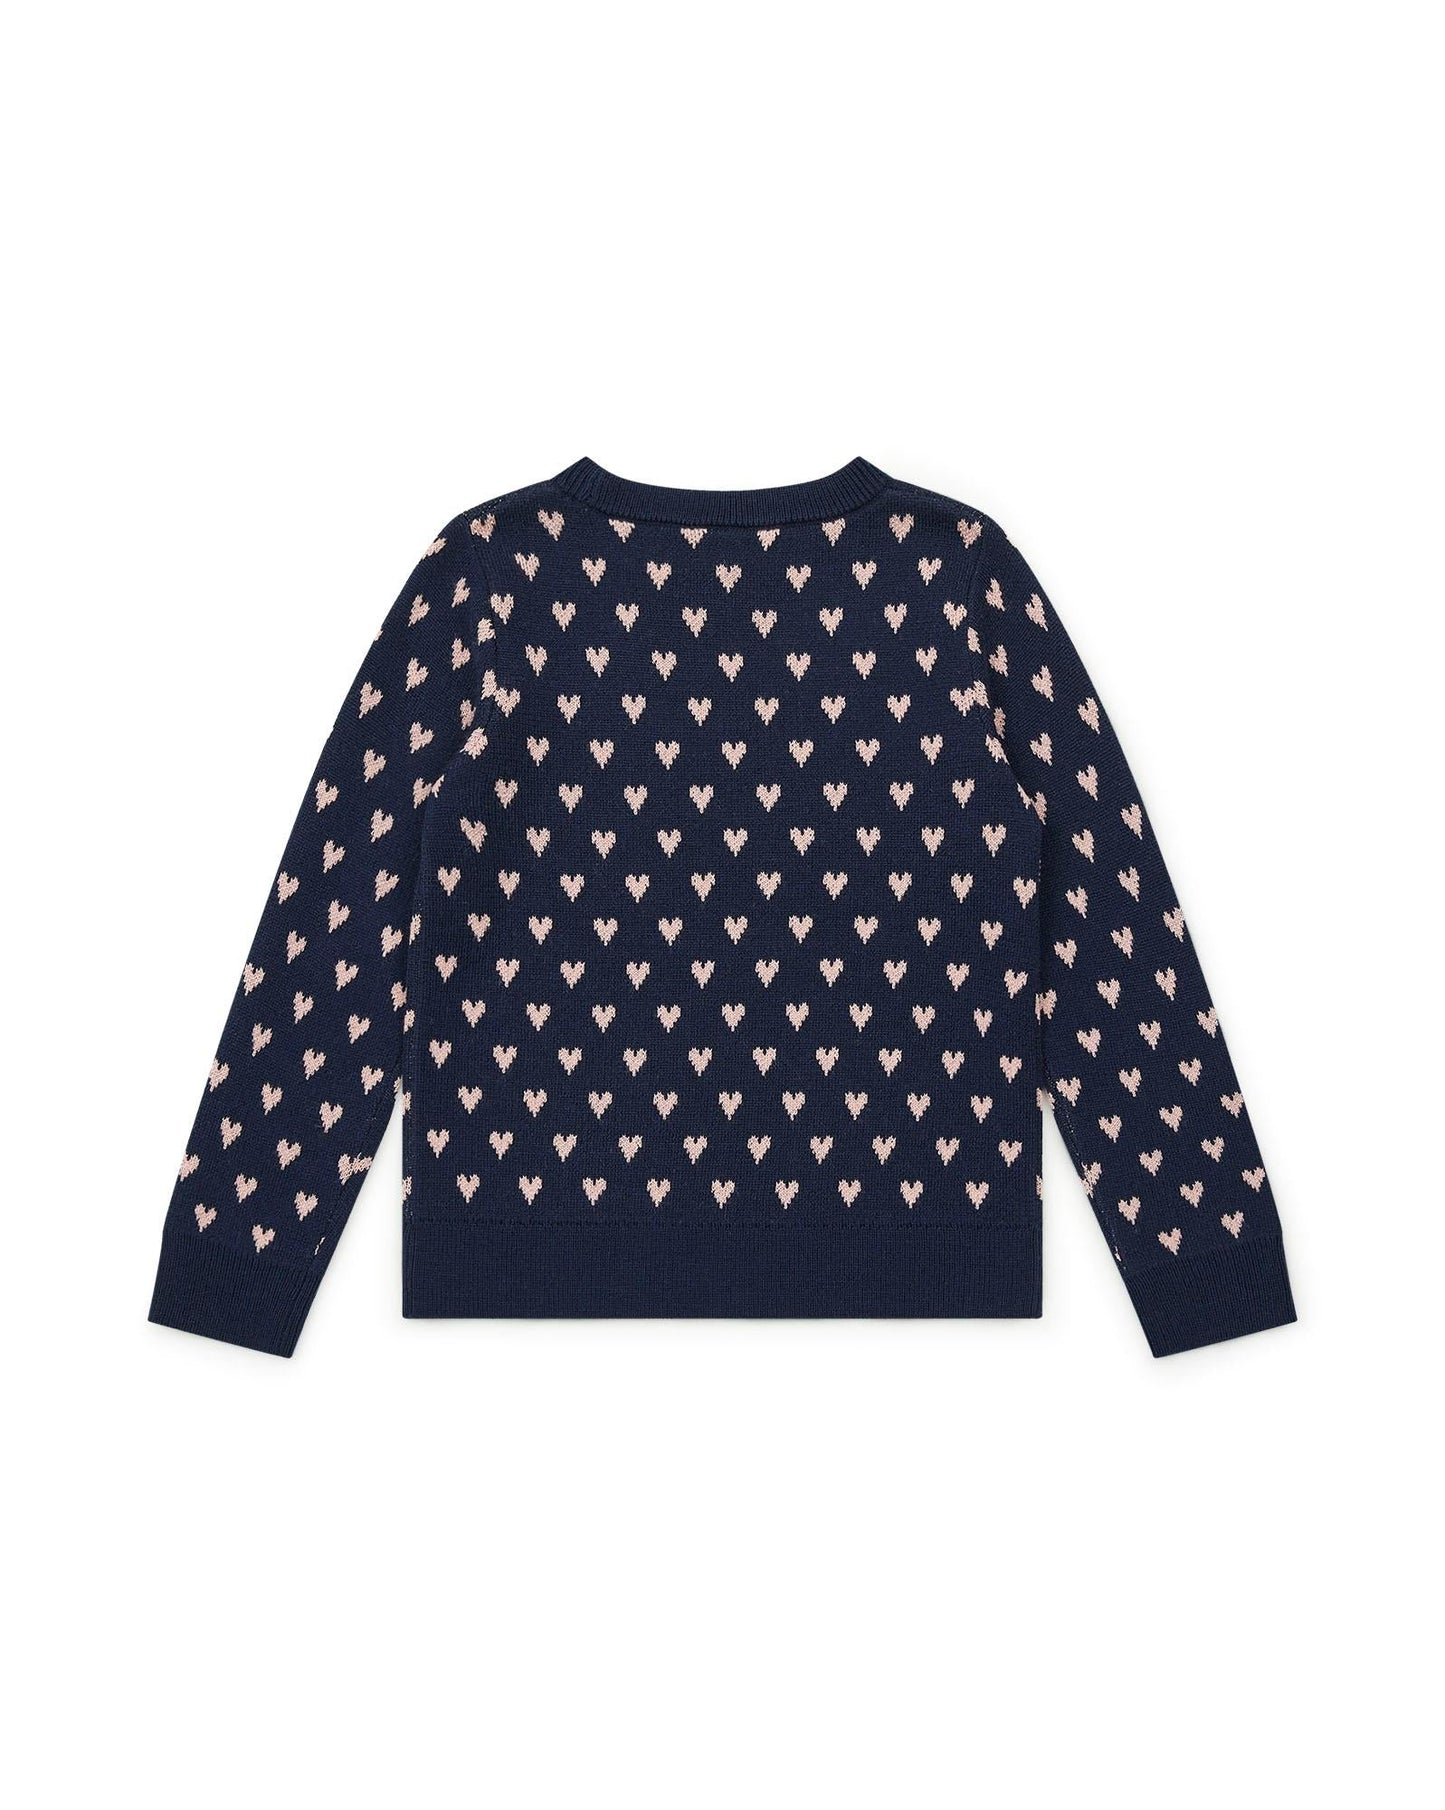 Sweater Mon Amour Blue in Knitweardouble jacquard